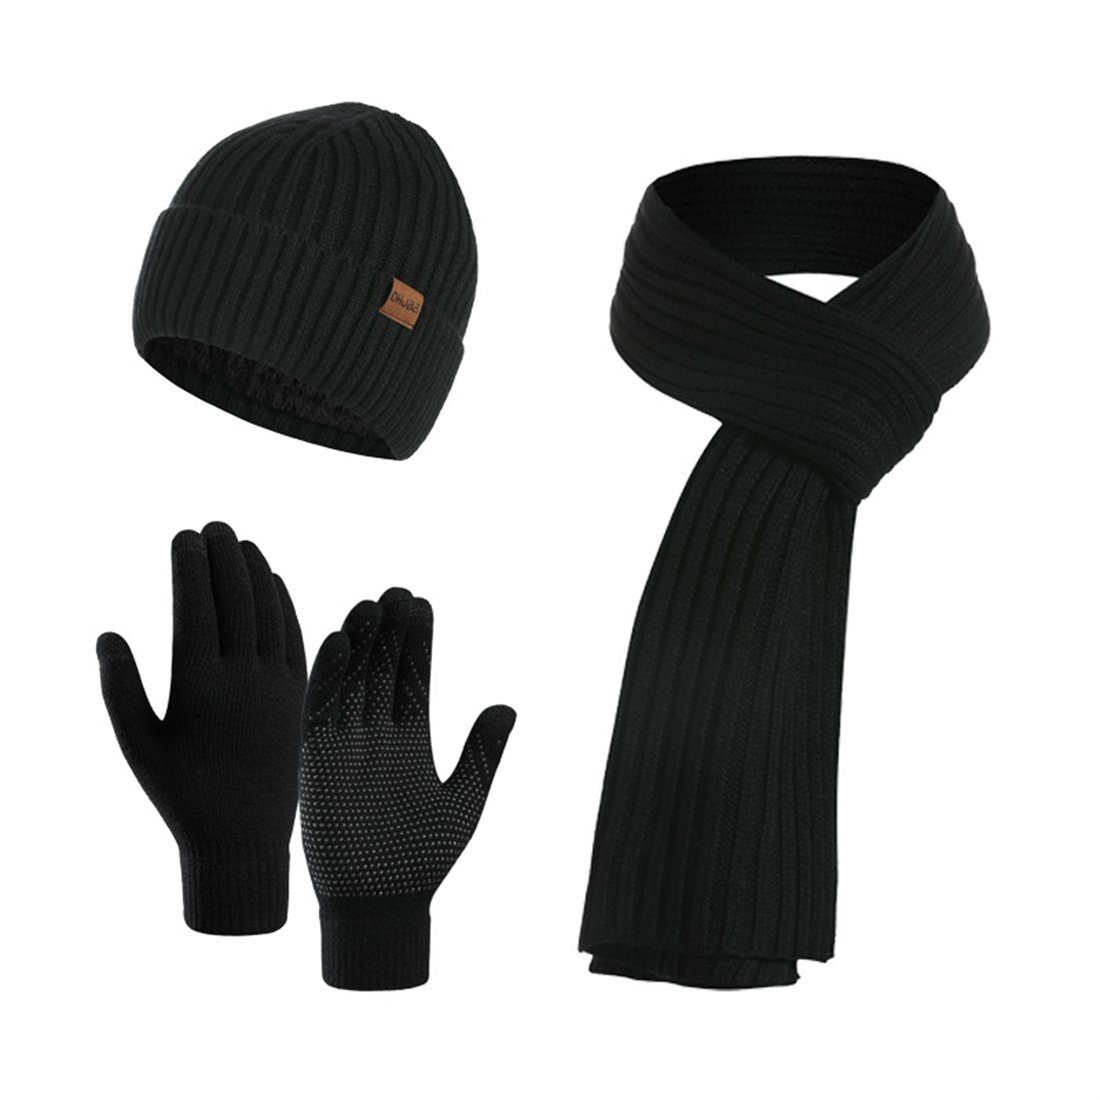 DÖRÖY Strickmütze Unisex Winter Strickmütze, Solid Farbe Hut Schal Handschuhe 3er Set Schwarz